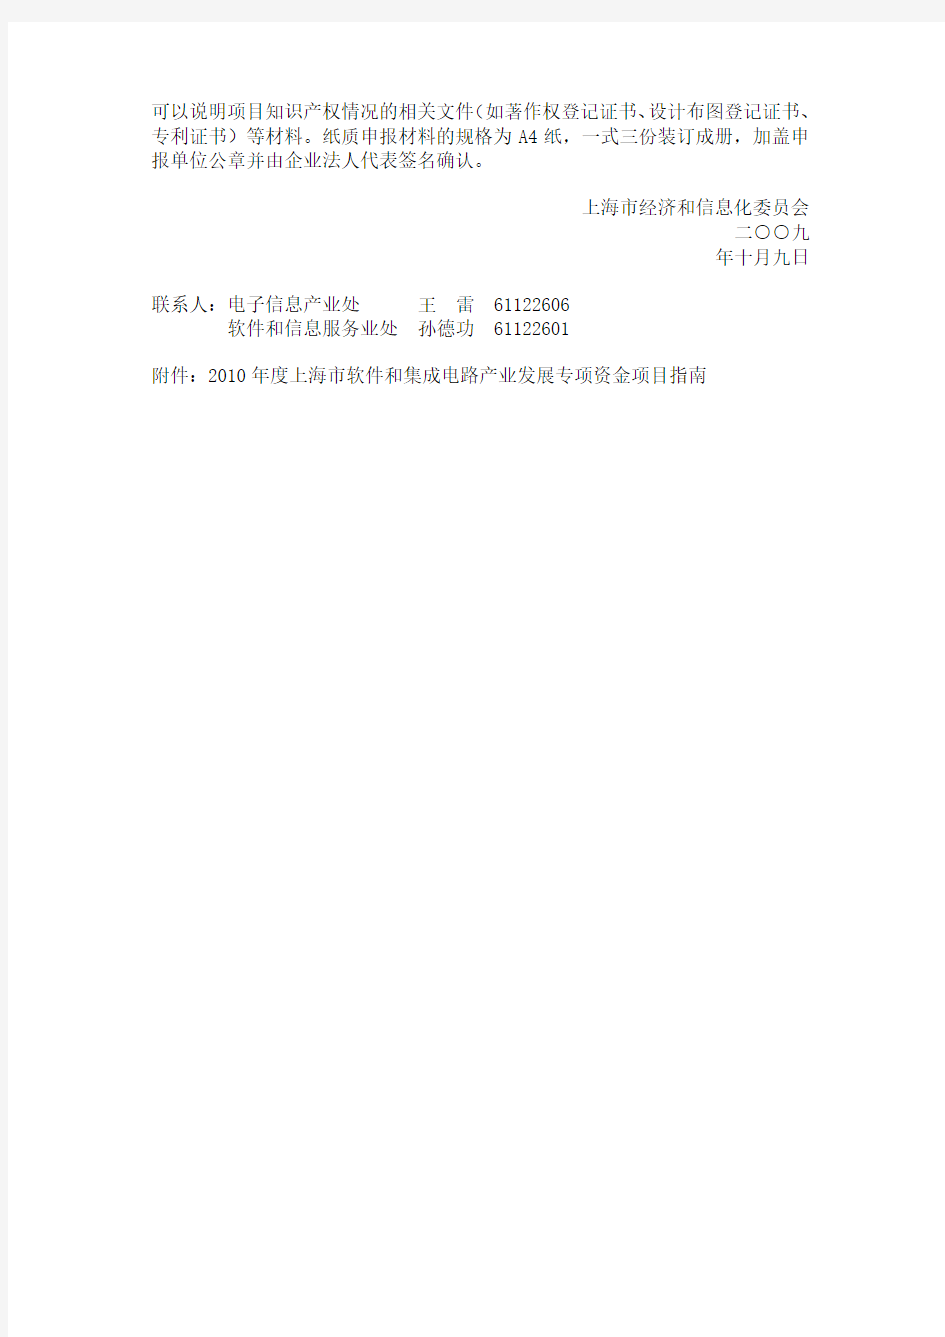 2010年度上海市软件和集成电路产业发展专项资金项目指南